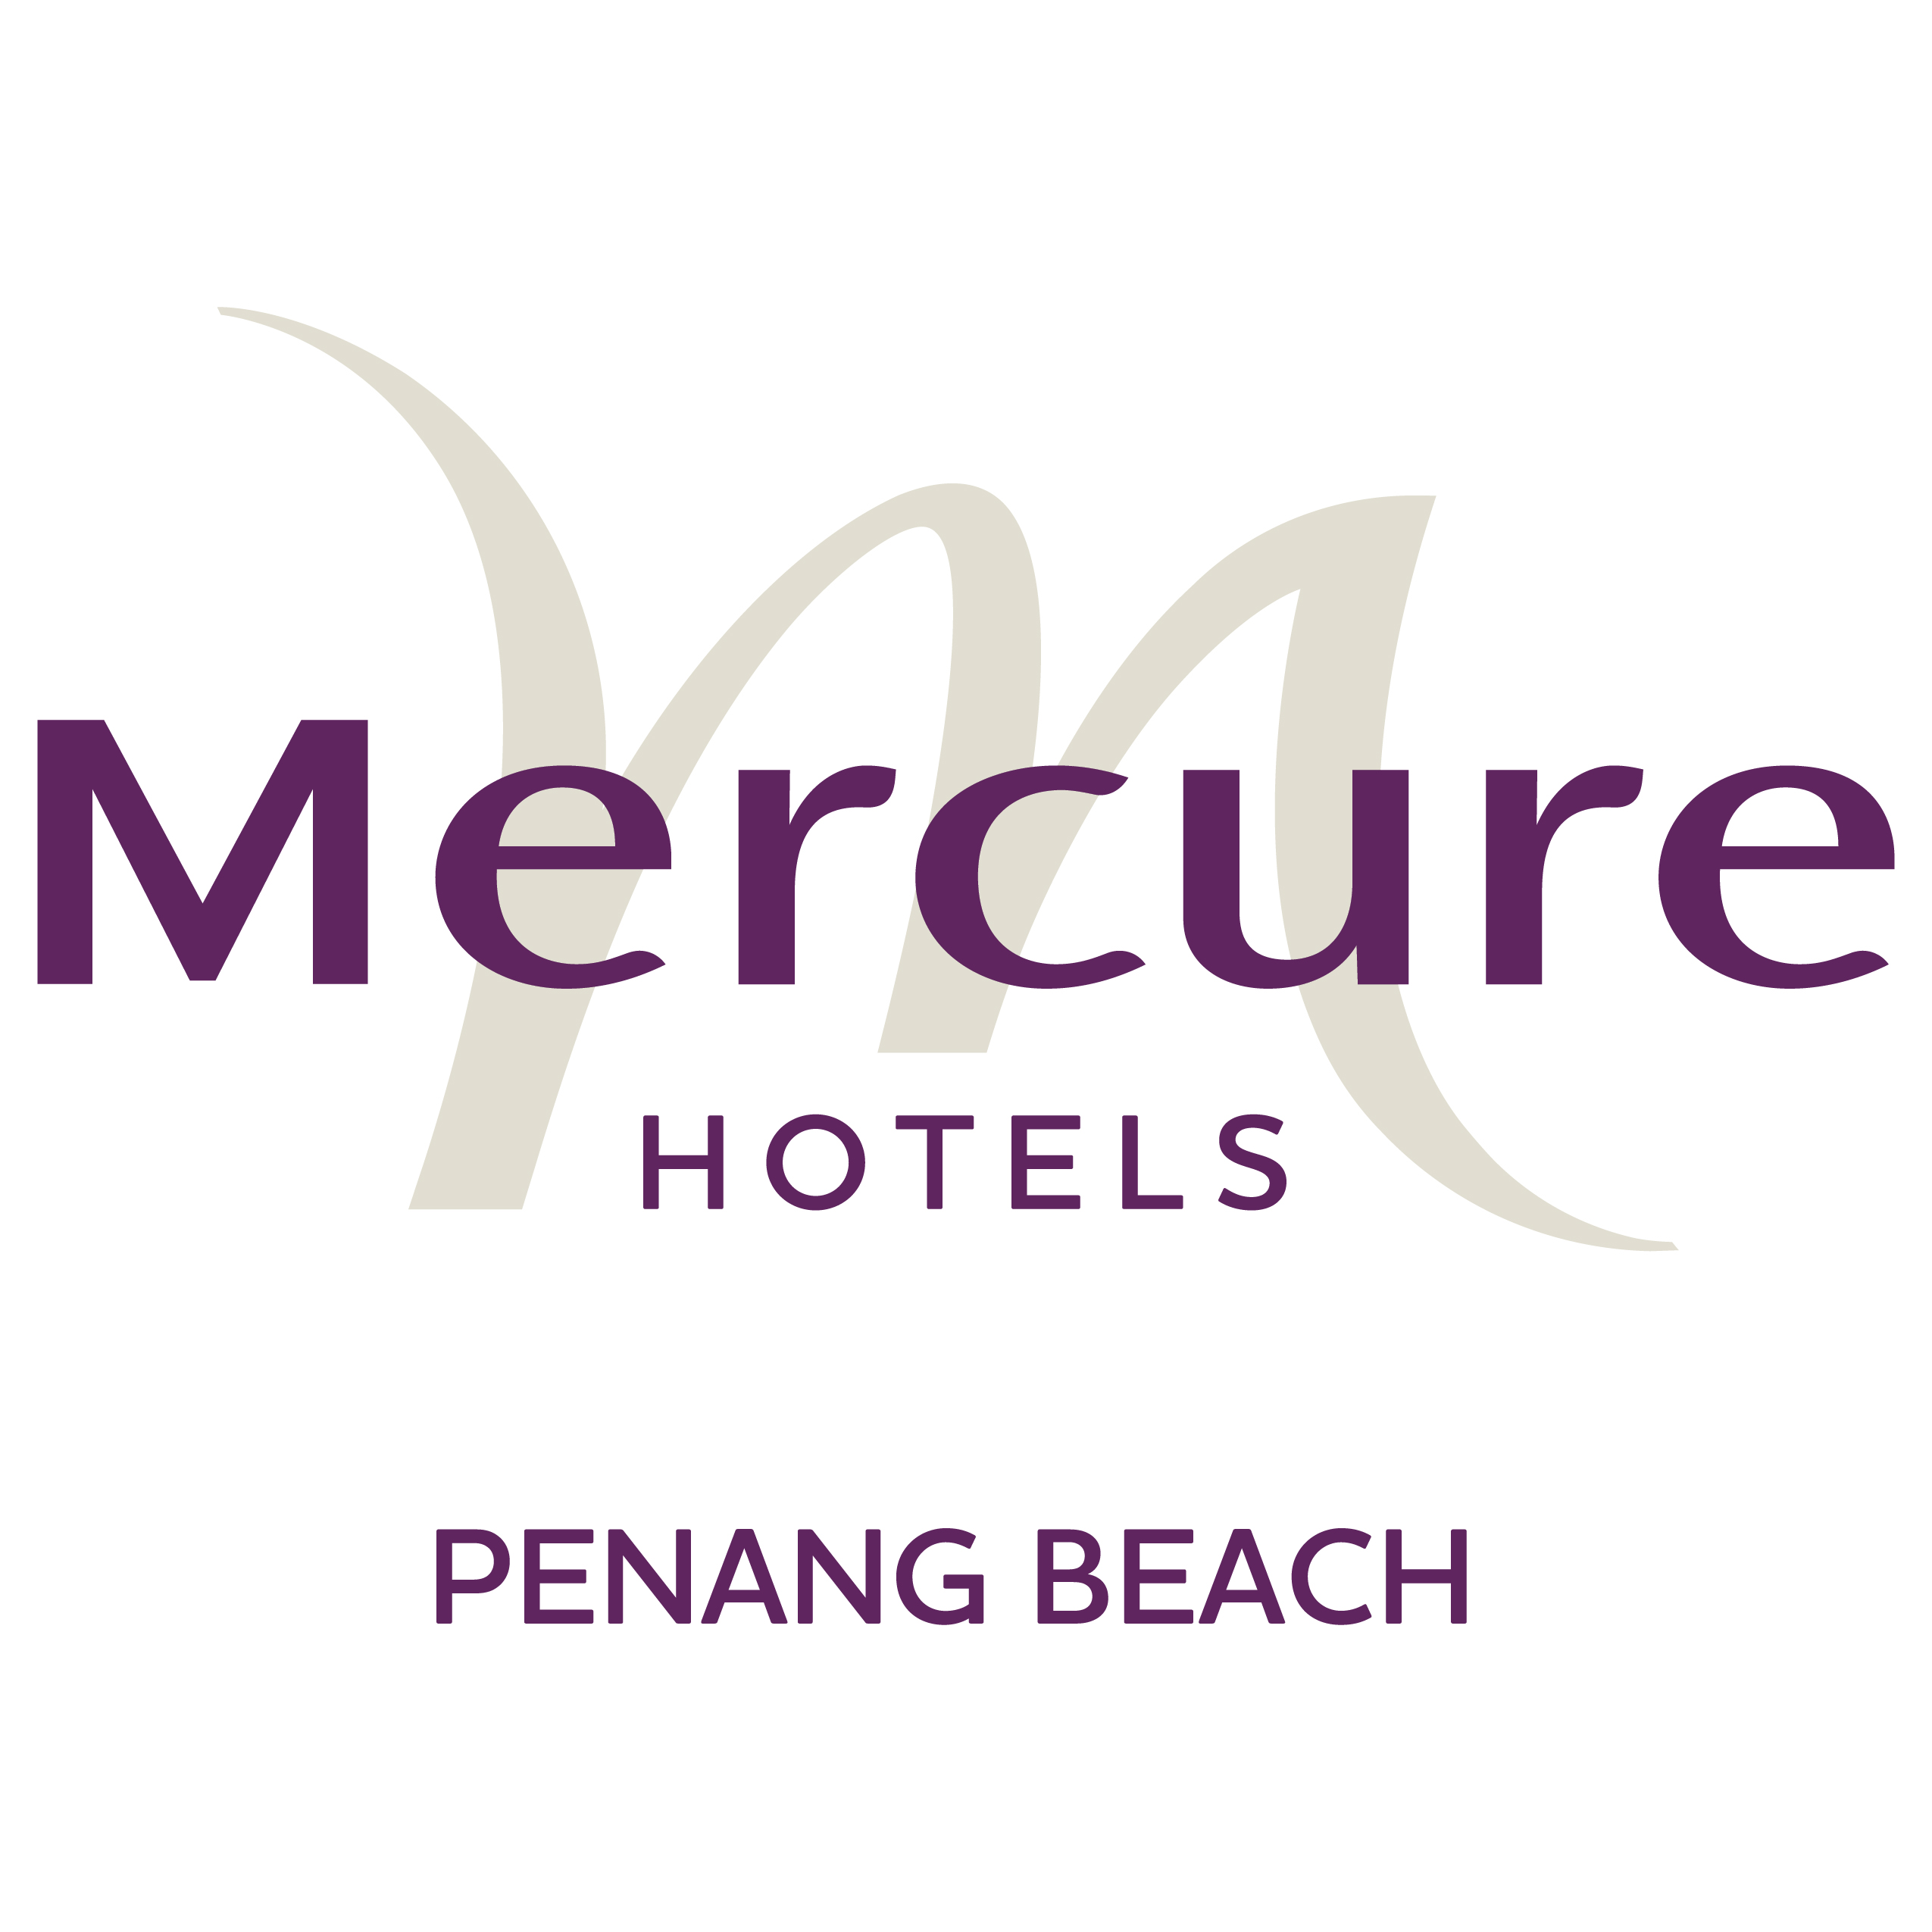 Penang hotel beach mercure Mercure Penang